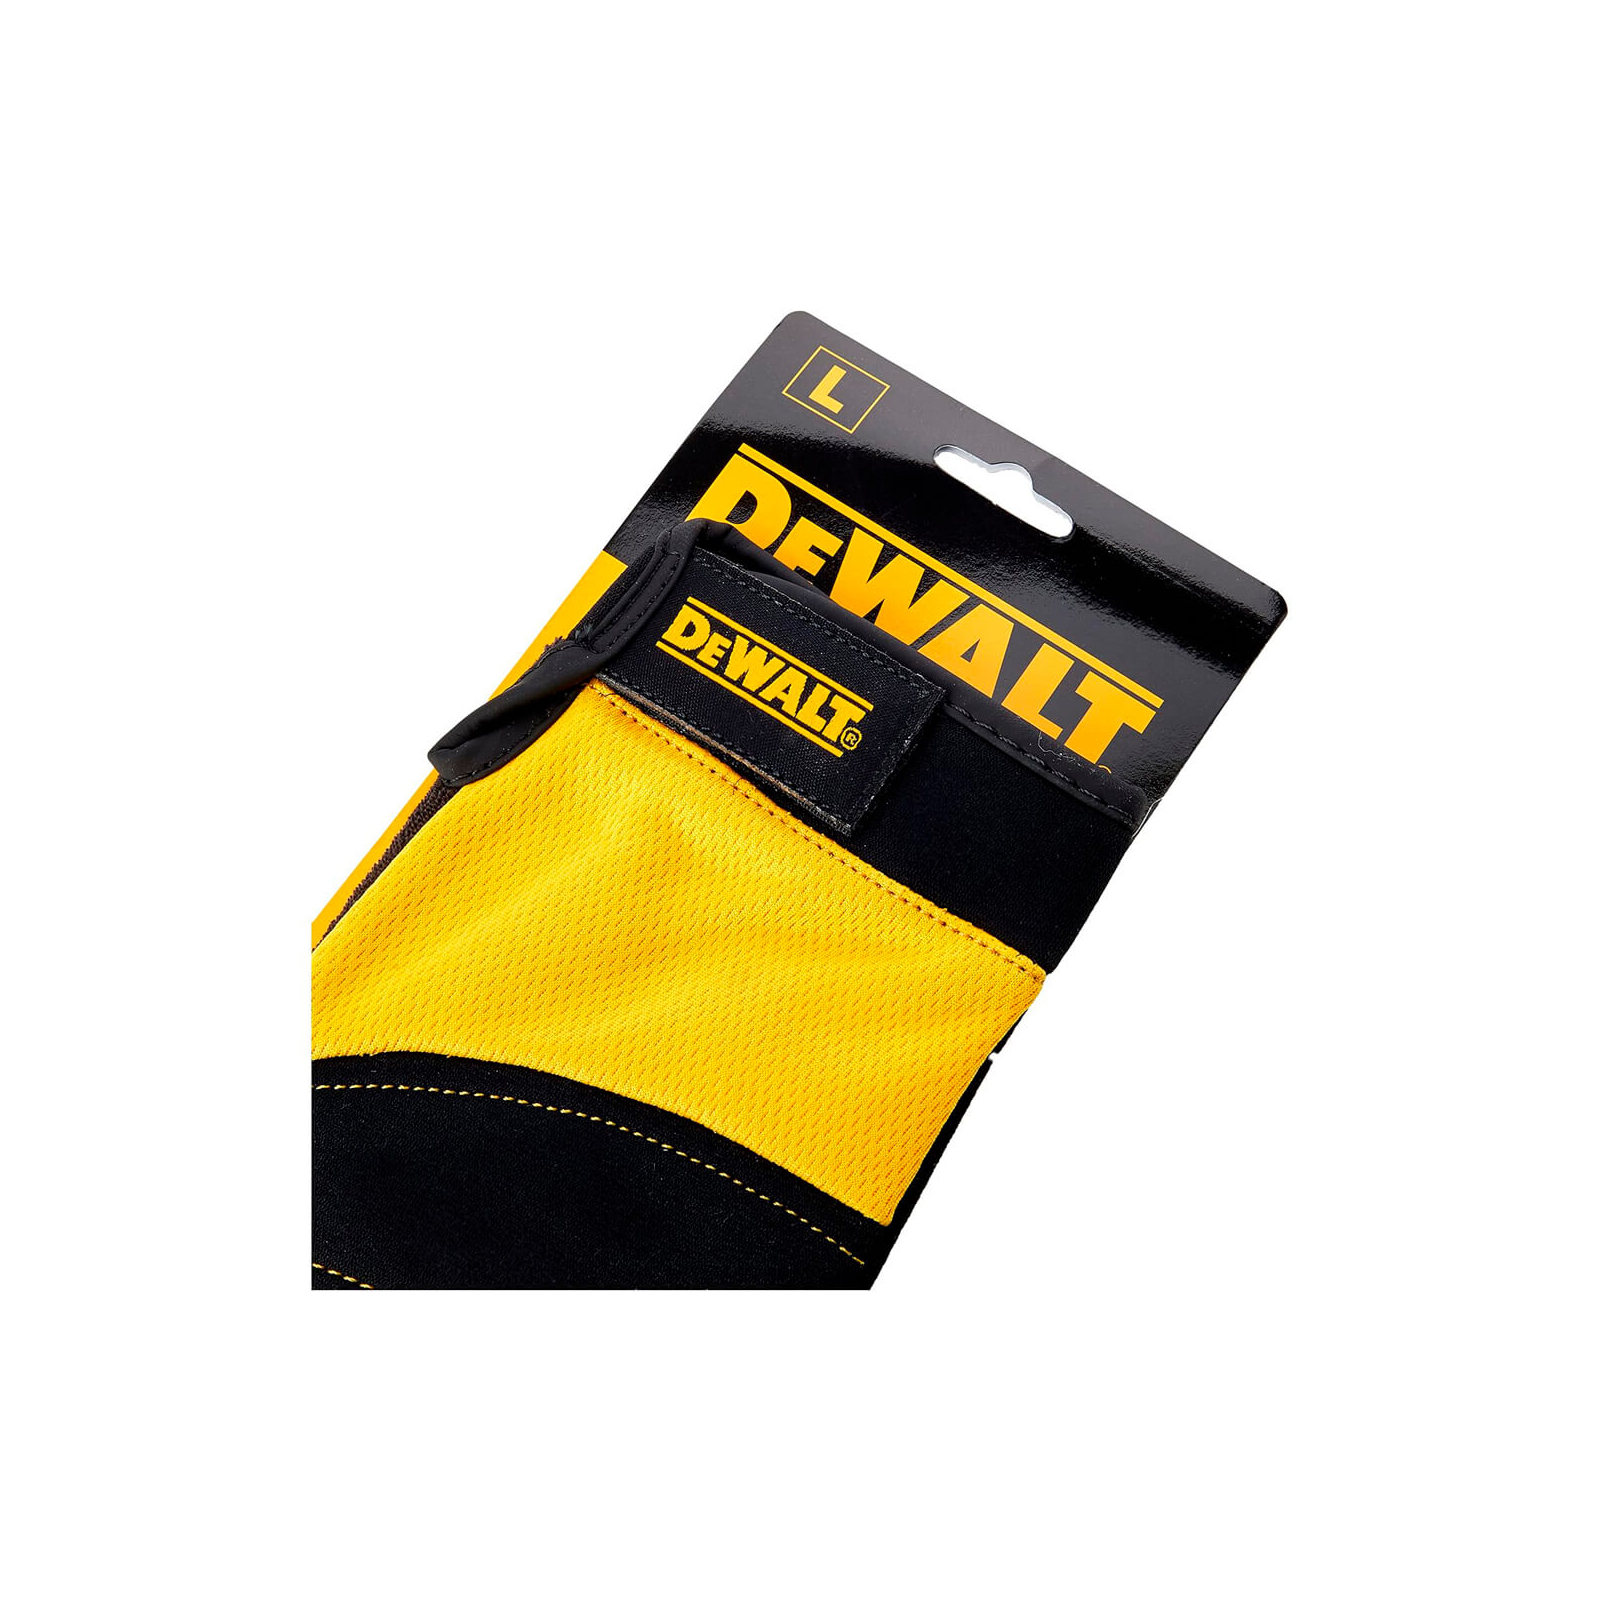 Защитные перчатки DeWALT разм. L/9, с накладками на ладони и пальцах (DPG215L) изображение 2